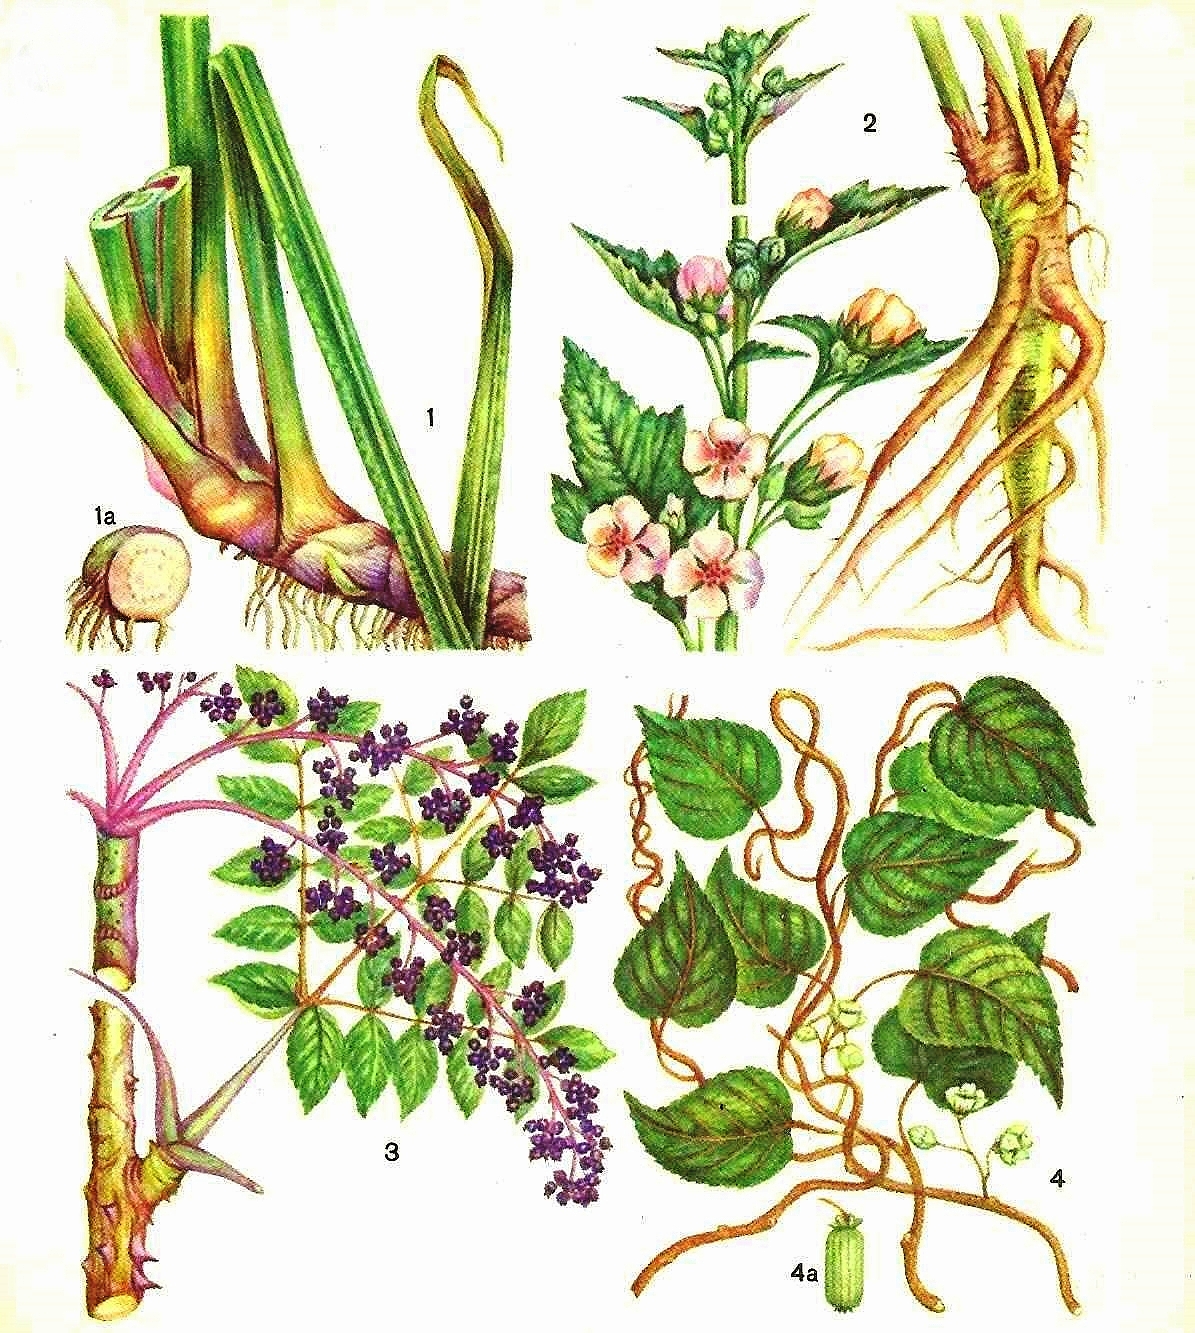 1 - аир обыкновенный (а - корневище); 2 - алтей лекарственный; 3 - аралия маньчжурская; 4 - актинидия коломикта (а - плод)